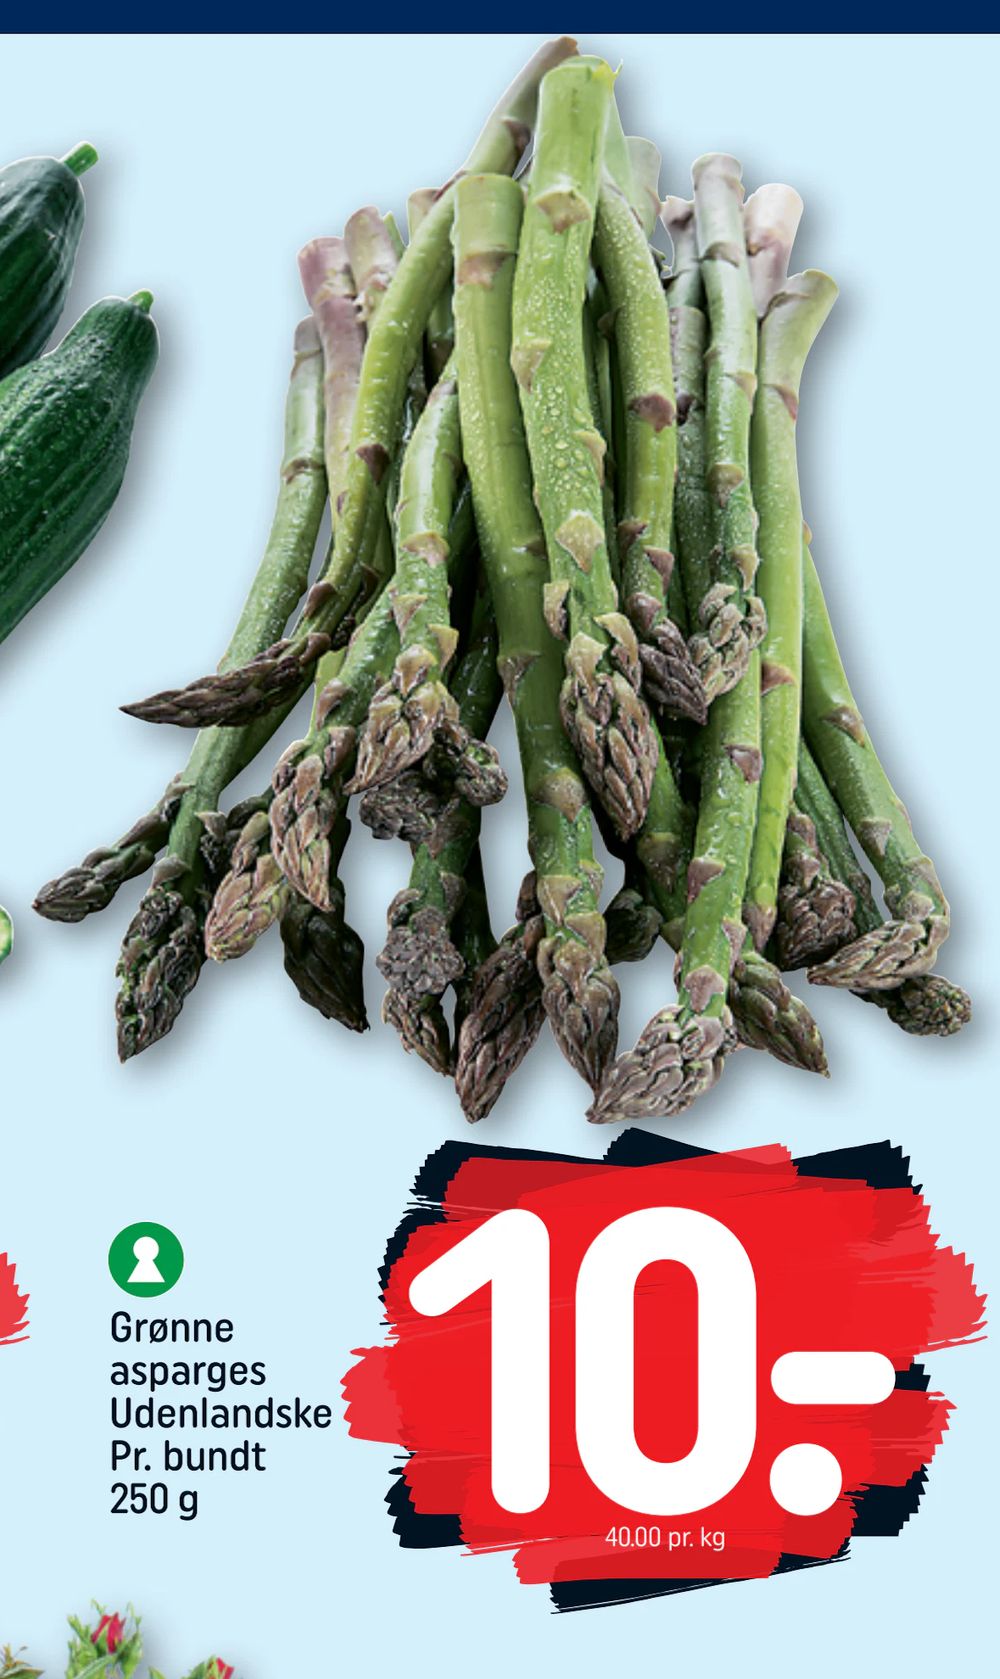 Tilbud på Grønne asparges Udenlandske Pr. bundt 250 g fra REMA 1000 til 10 kr.